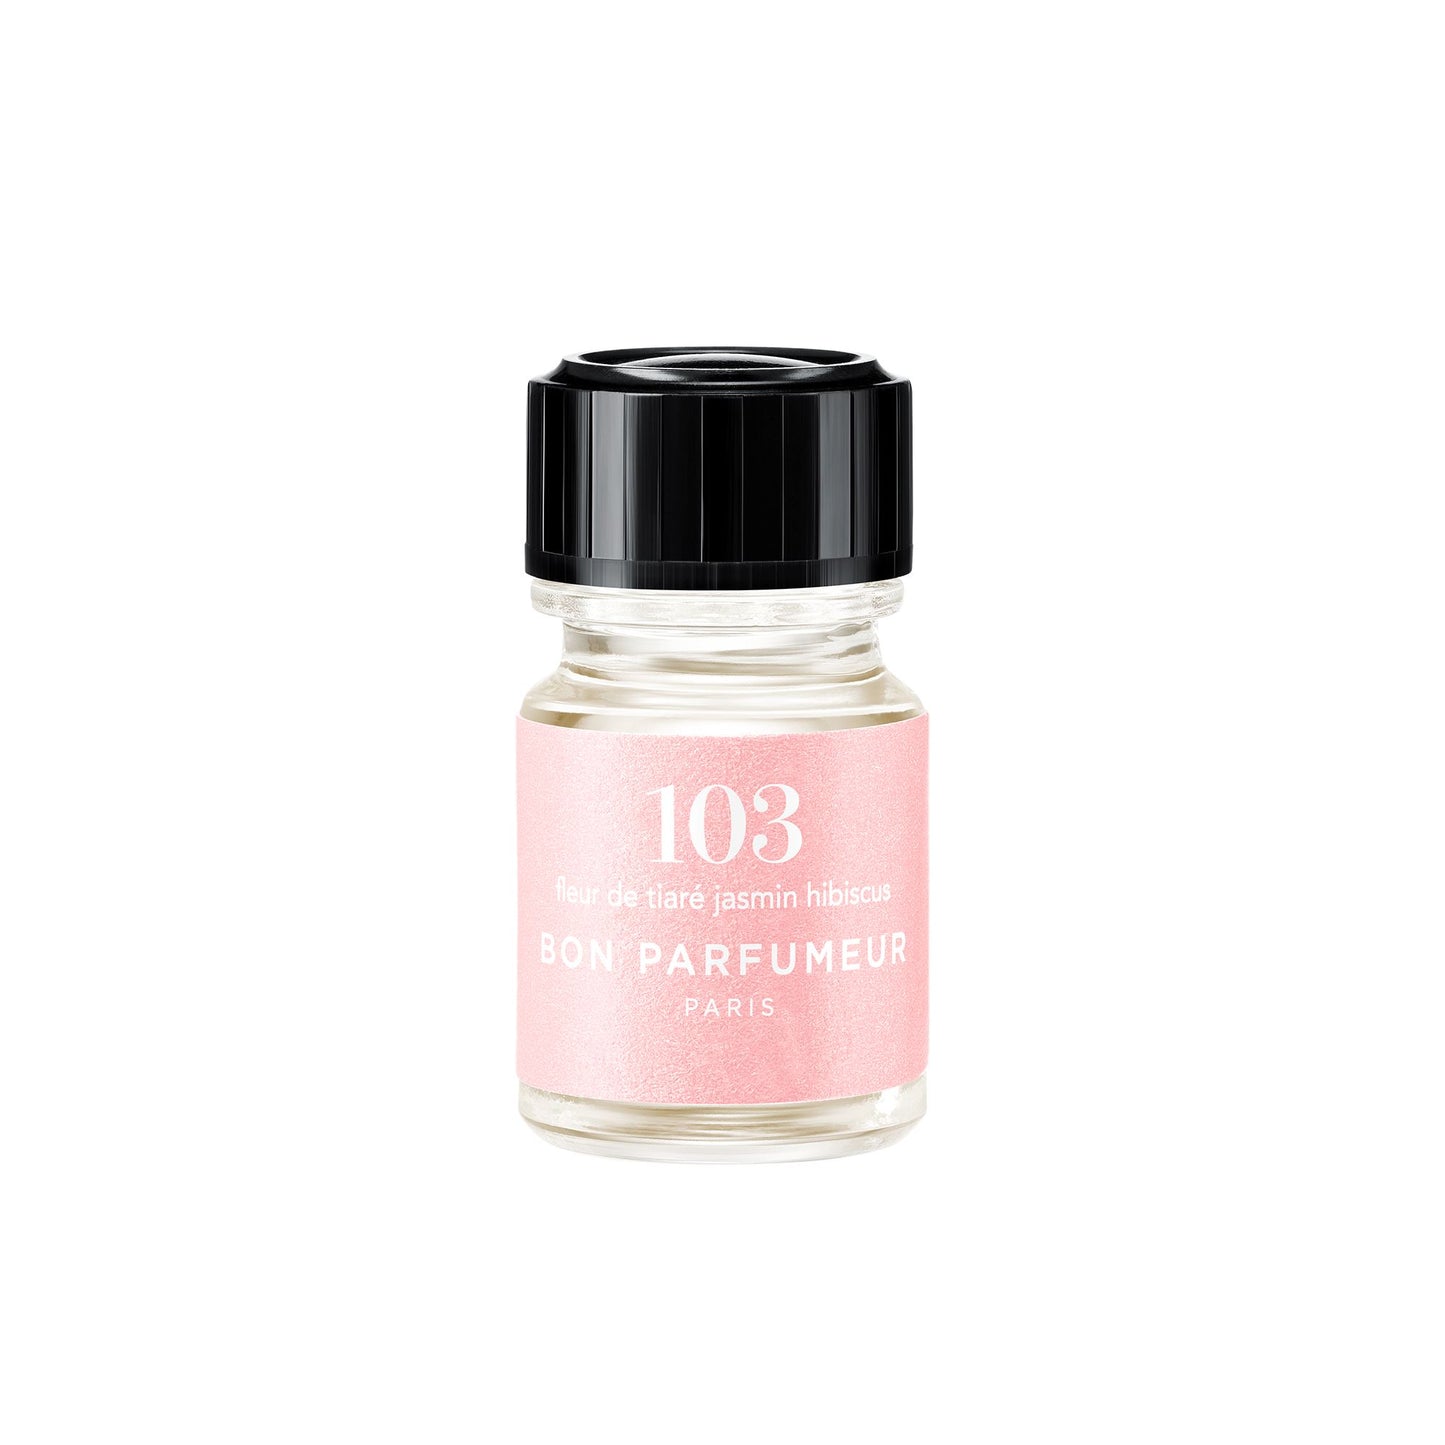 Mini-Parfums 2,5ml Bon Parfumeur France 103: Fleur de tiaré, jasmin, hibiscus 